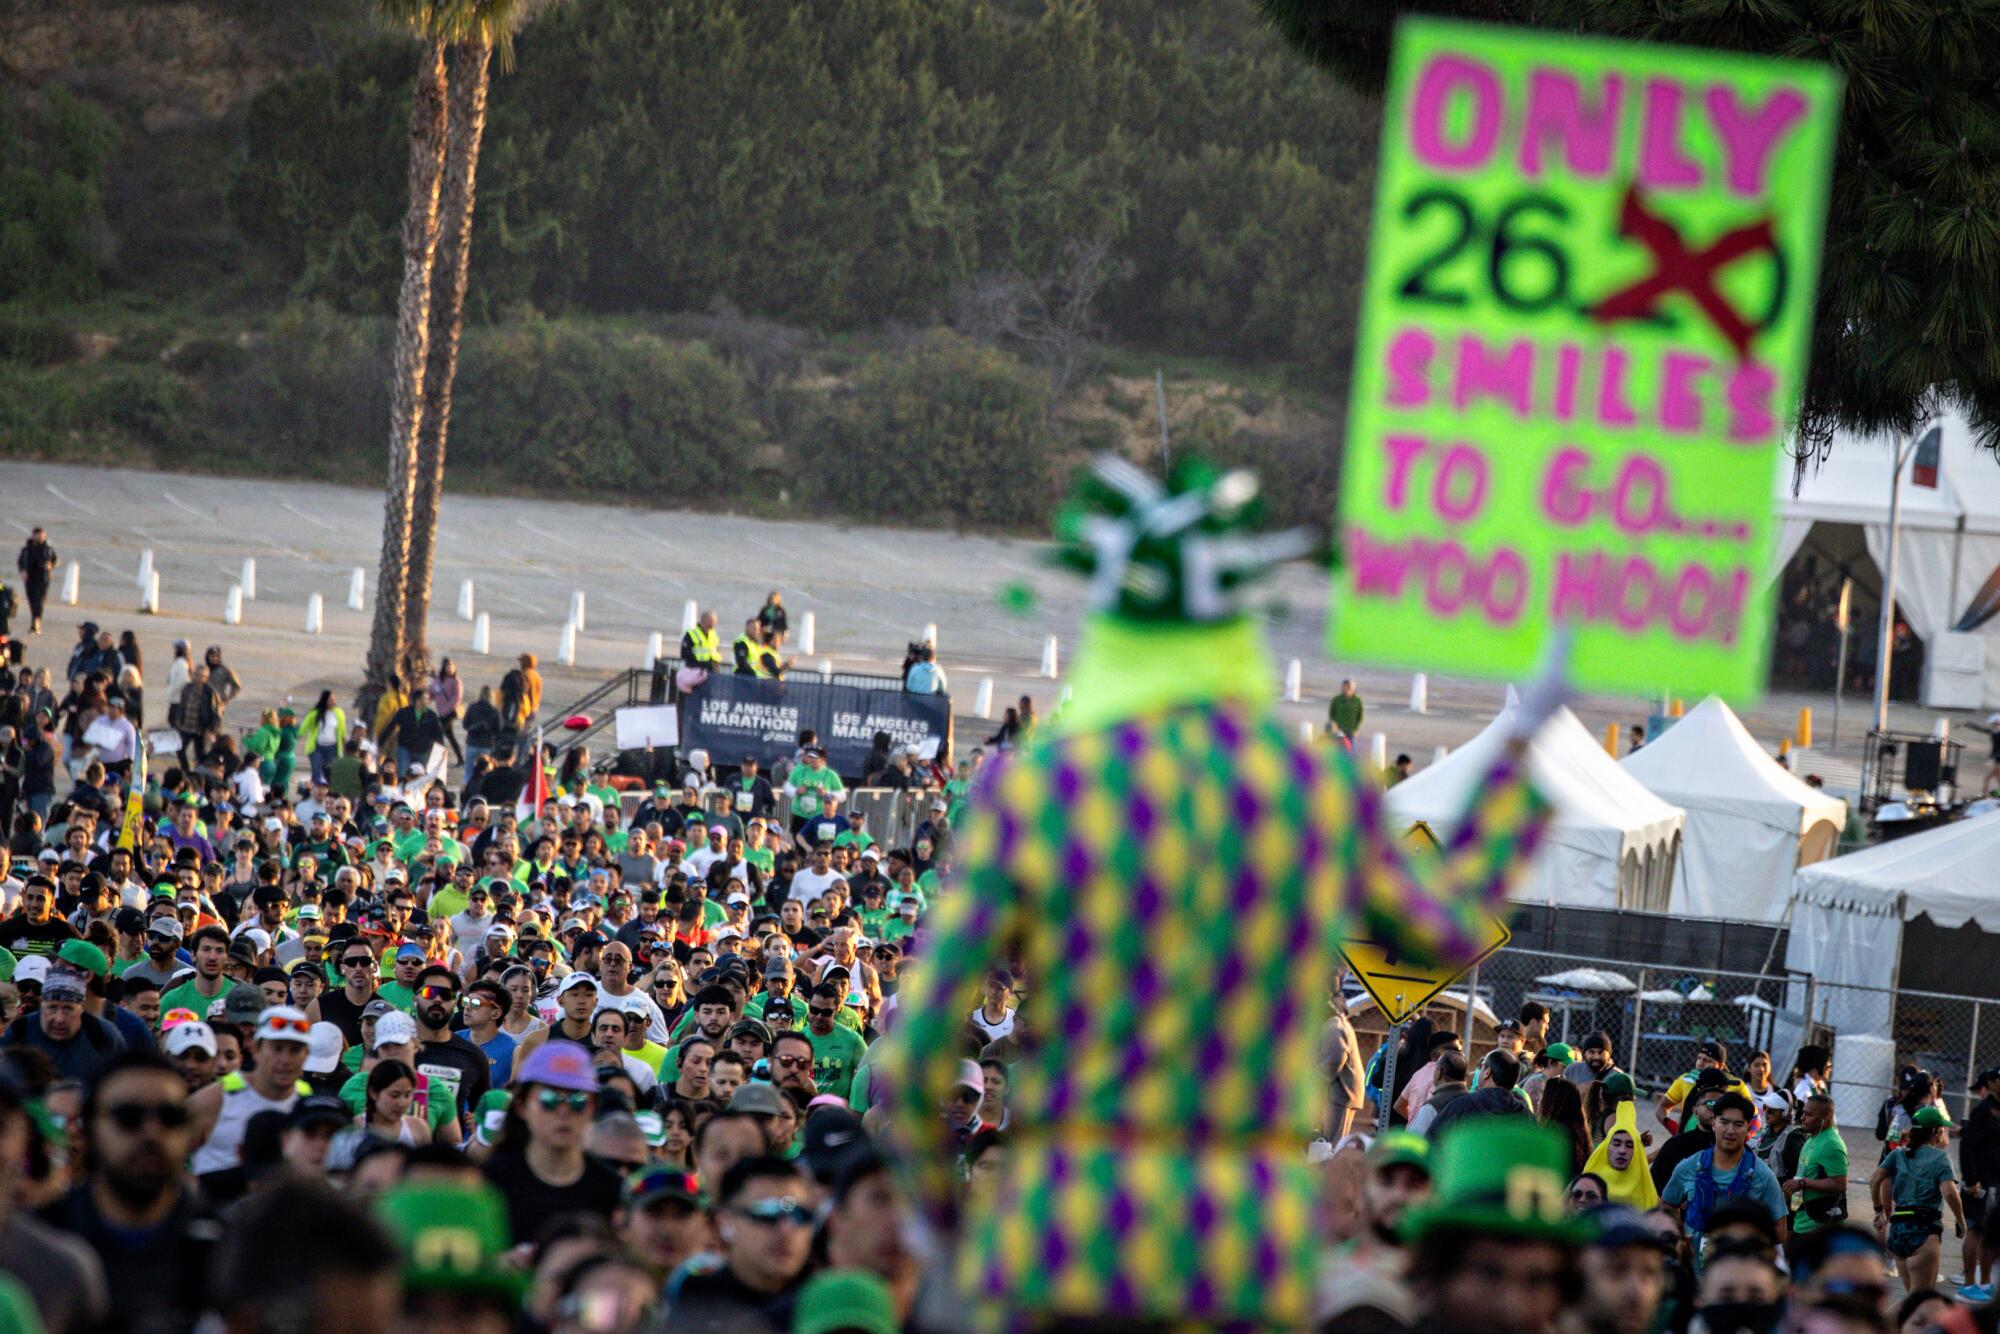 Un homme tient une pancarte indiquant "Seulement 26,2 sourires à emporter" au Marathon de Los Angeles.